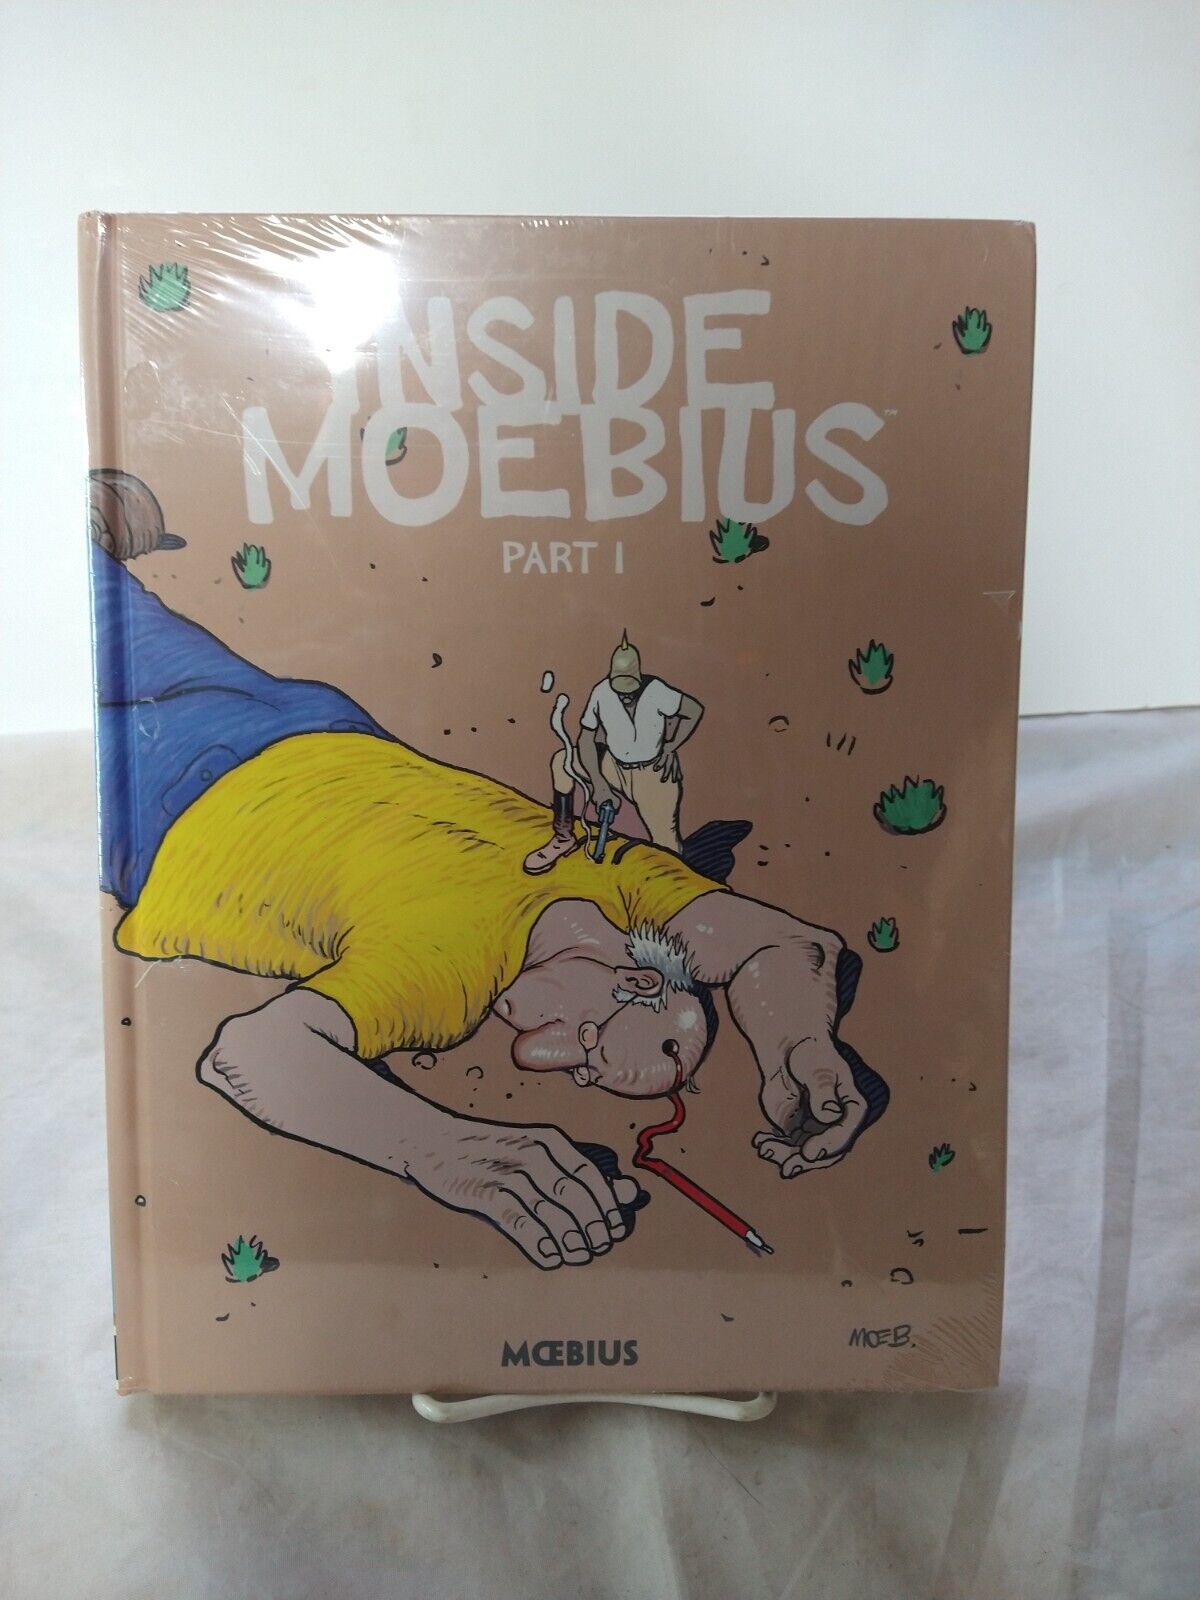 Inside Moebius Part 1 Hardcover Dark Horse Comics New Sealed Mœbius